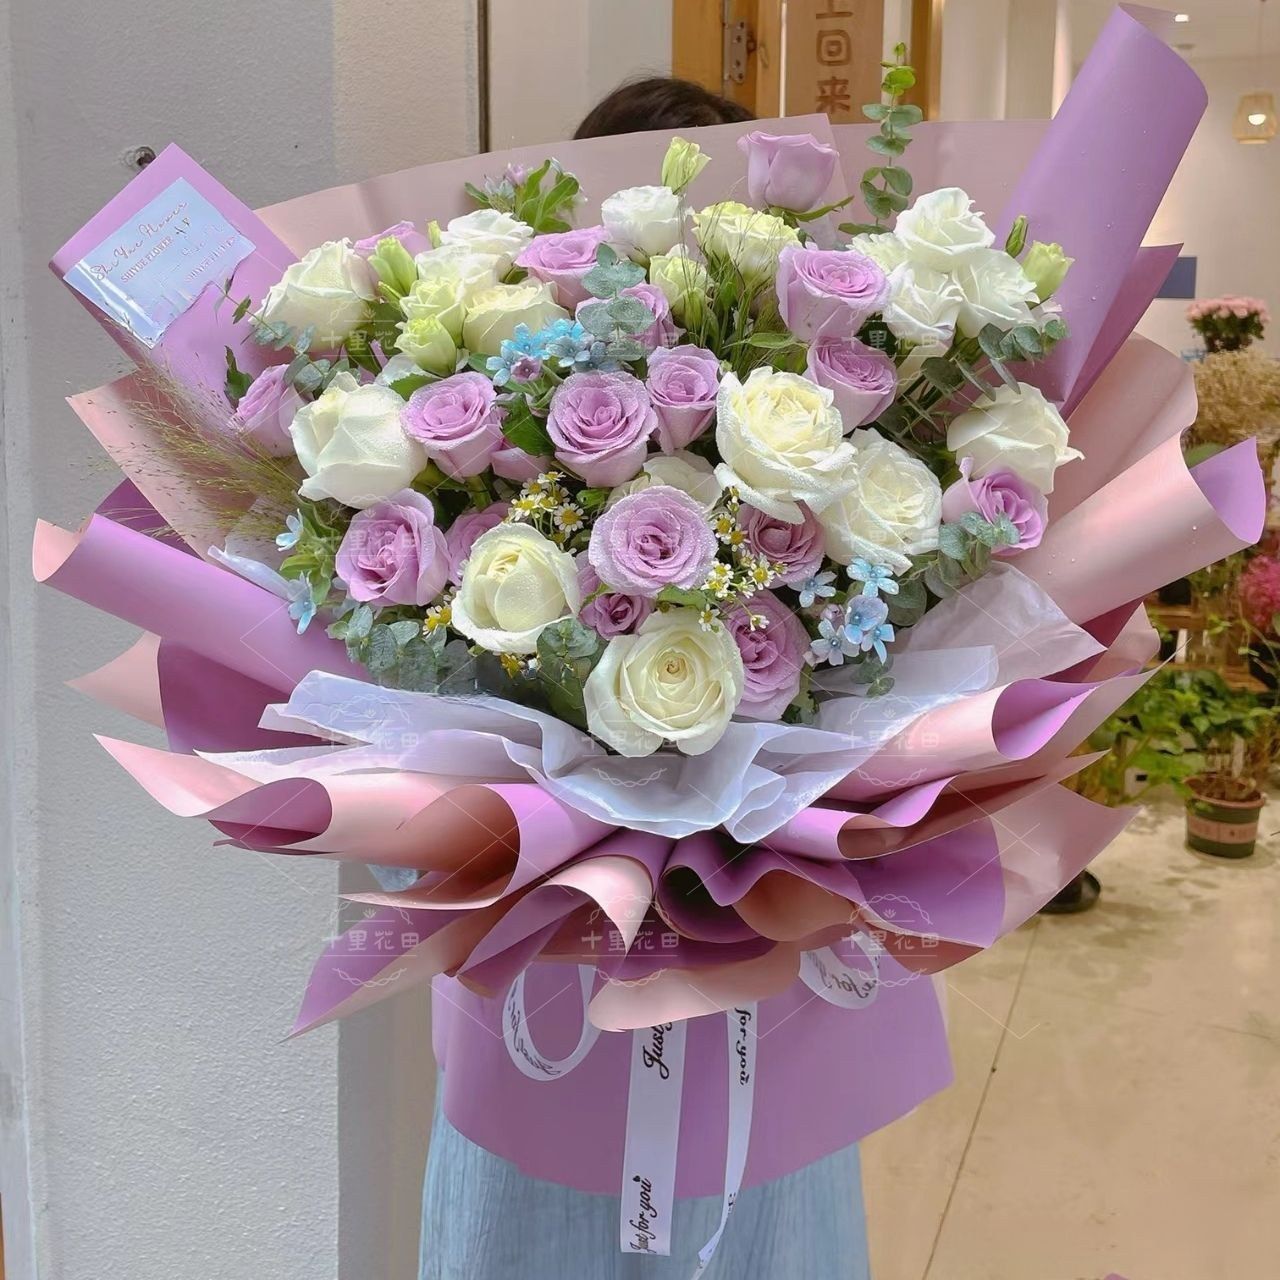 【雅致】19朵紫玫瑰玫瑰花花束生日鲜花女士生日礼物送女友闺蜜朋友花店送花上门鲜花花束配送